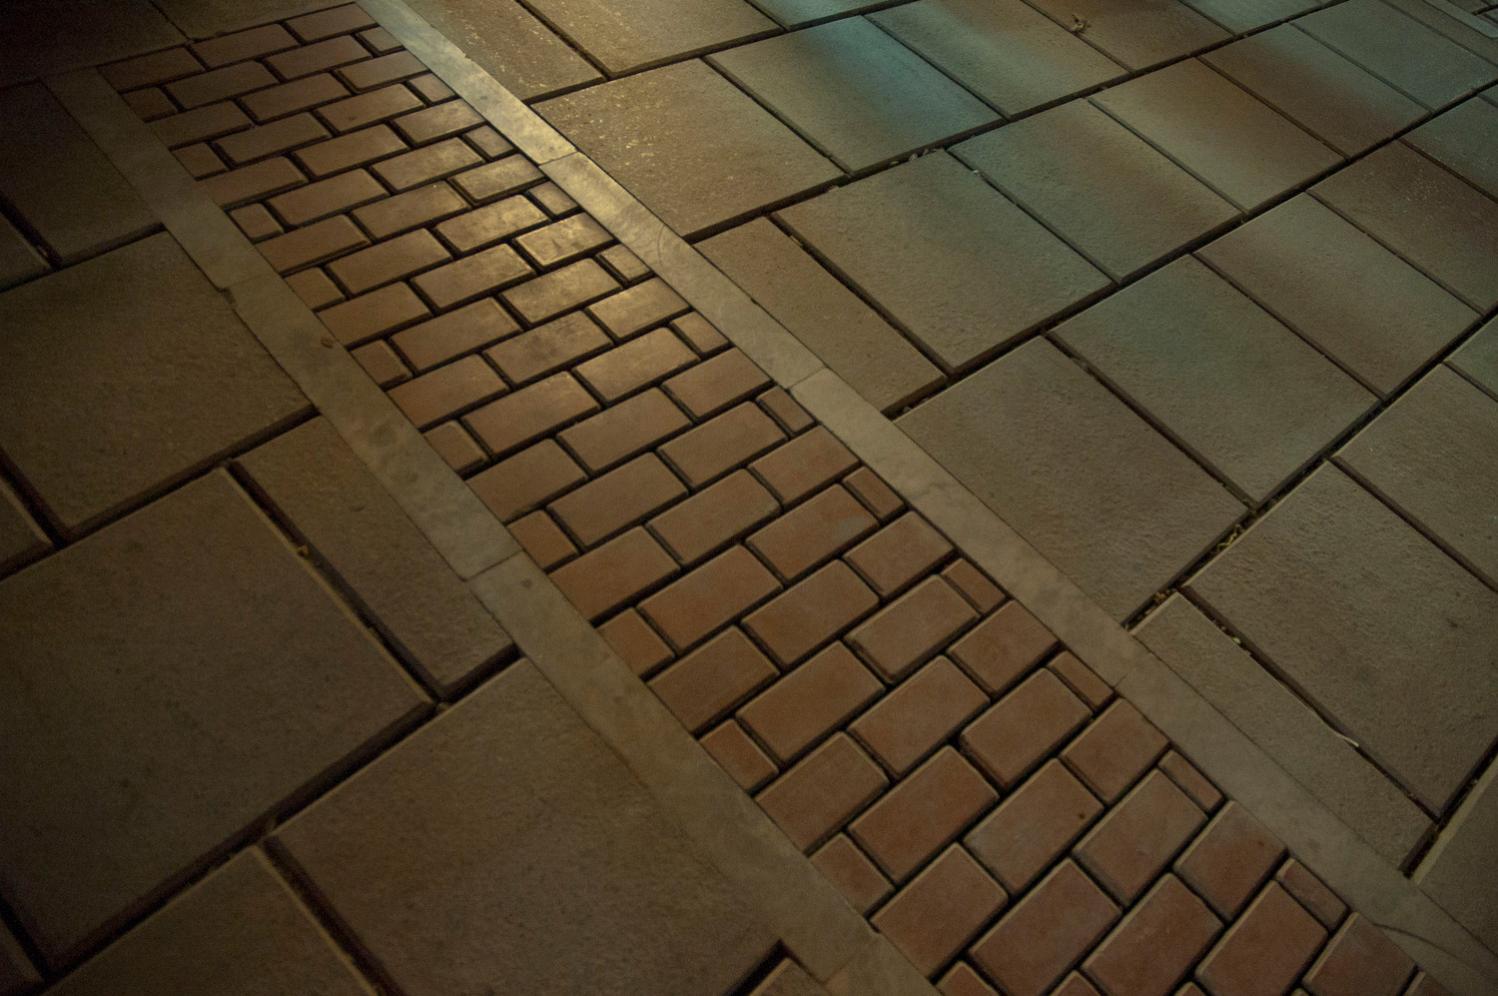 Square floor texture